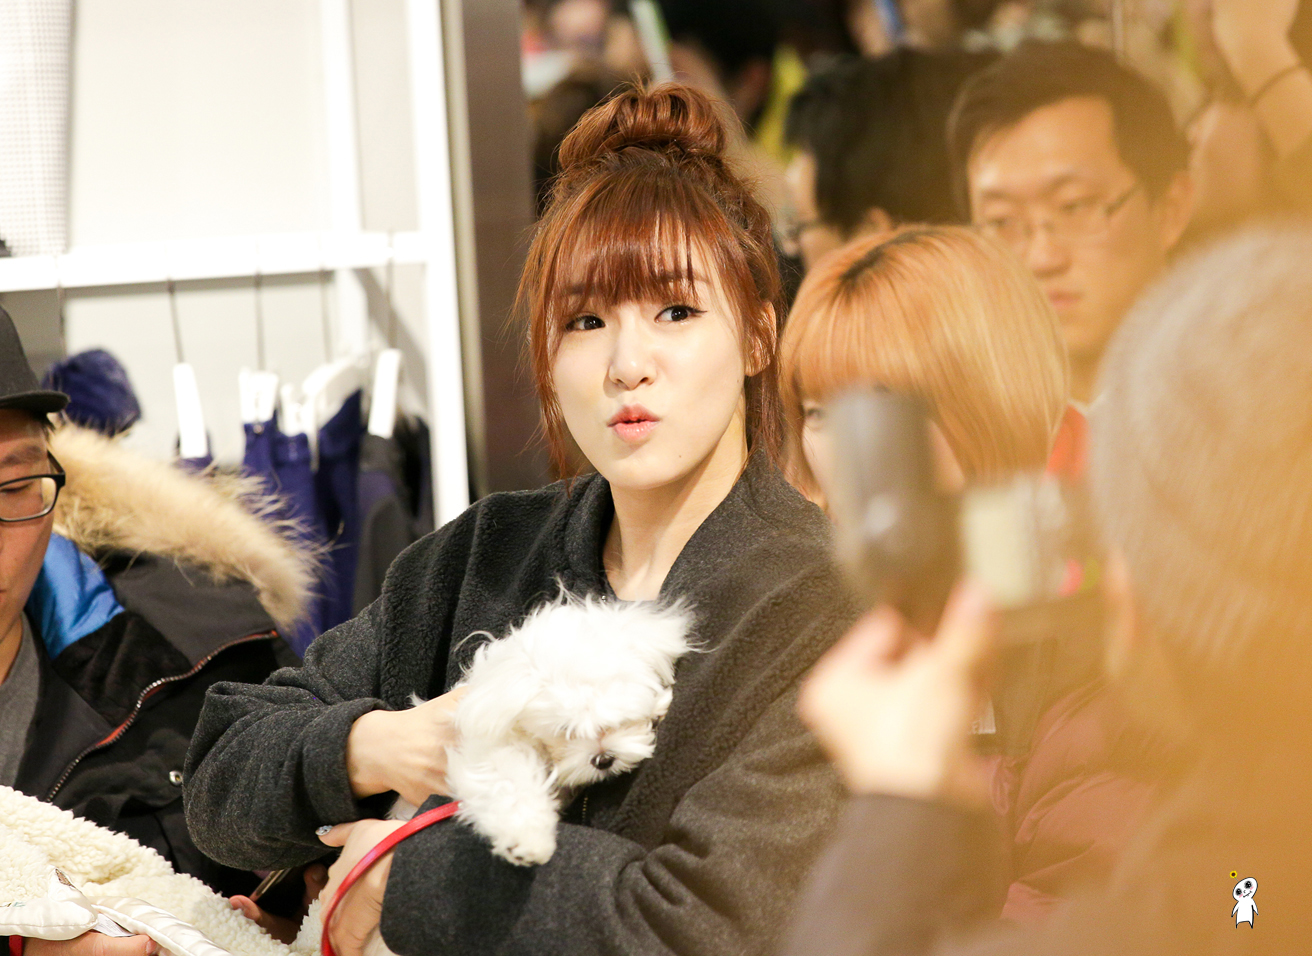 [PIC][28-11-2013]Tiffany ghé thăm cửa hàng "QUA" ở Hyundai Department Store vào trưa nay - Page 3 220F3D3F52980CB4358CAF